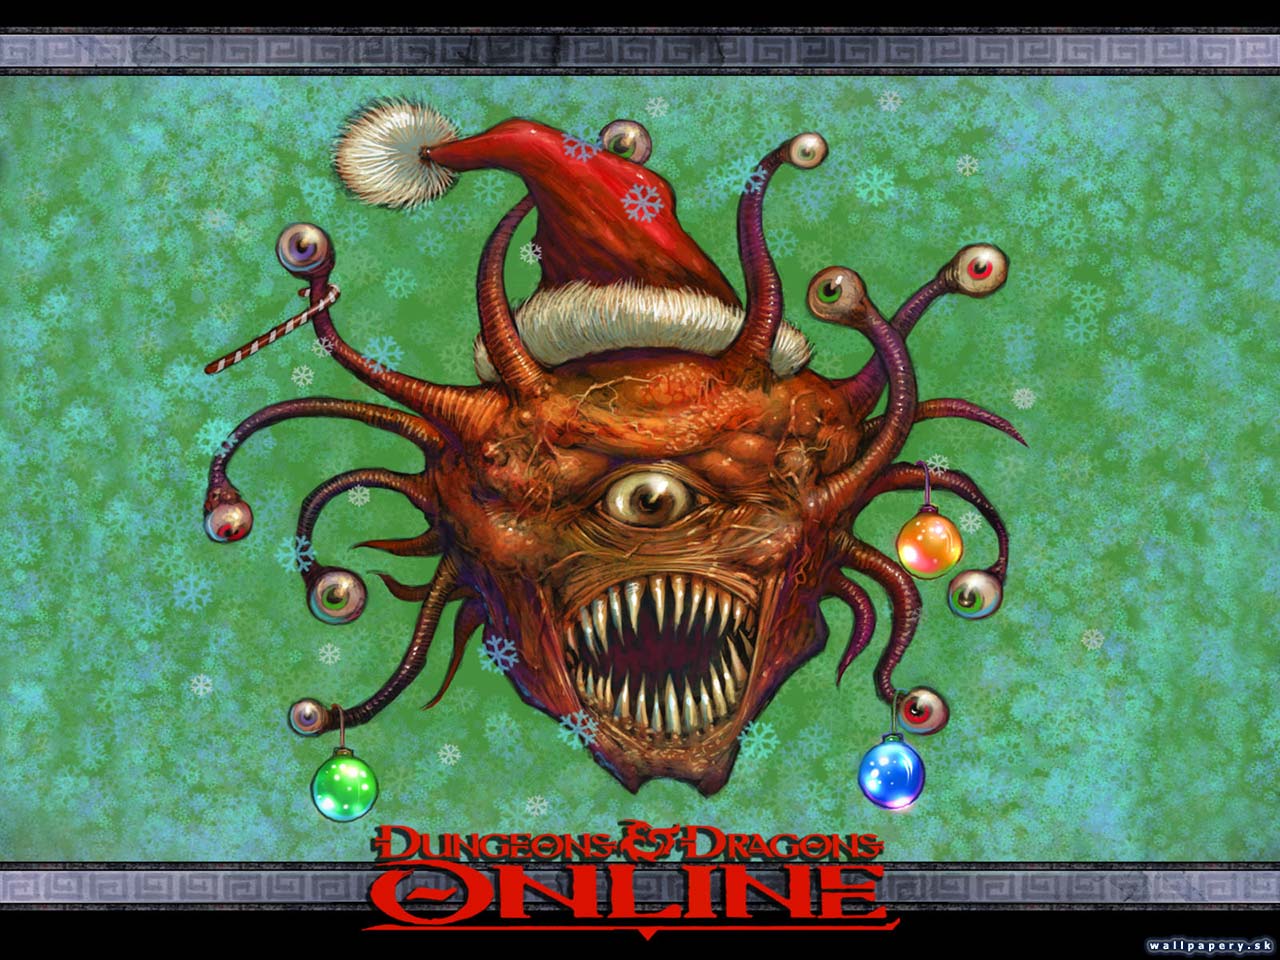 Dungeons & Dragons Online: Stormreach - wallpaper 1